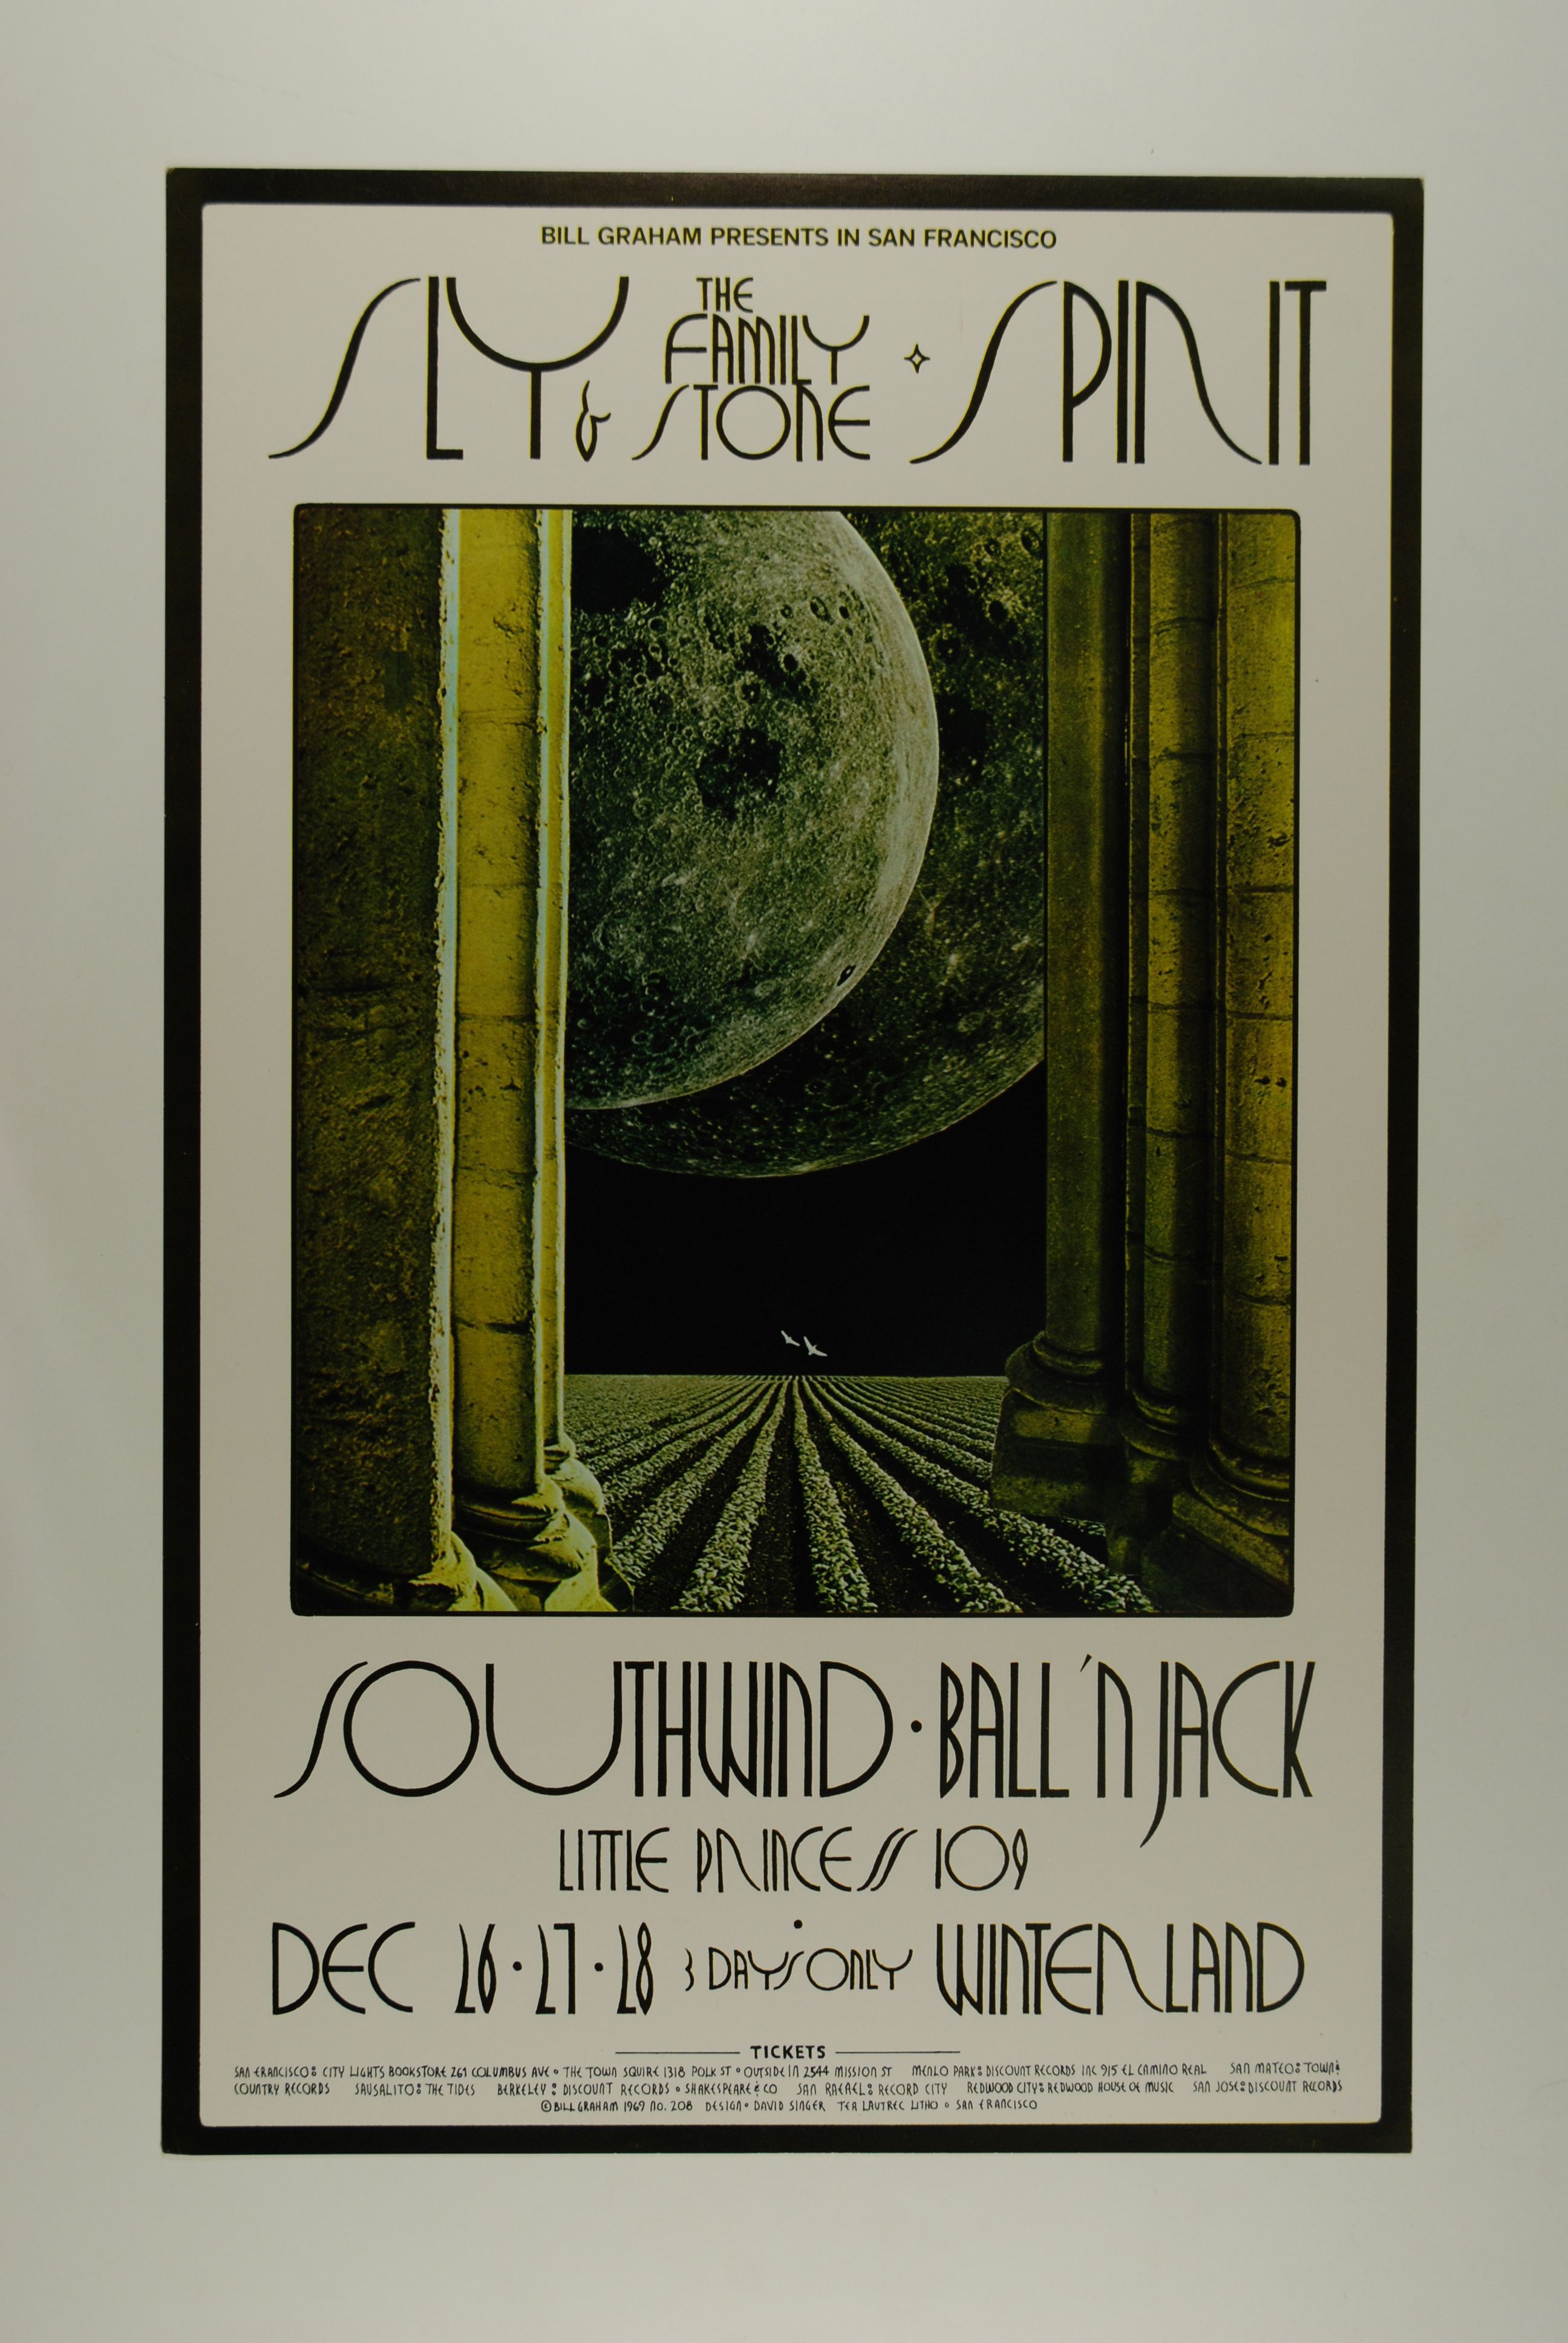 BG-208-OP-1 Concert Poster